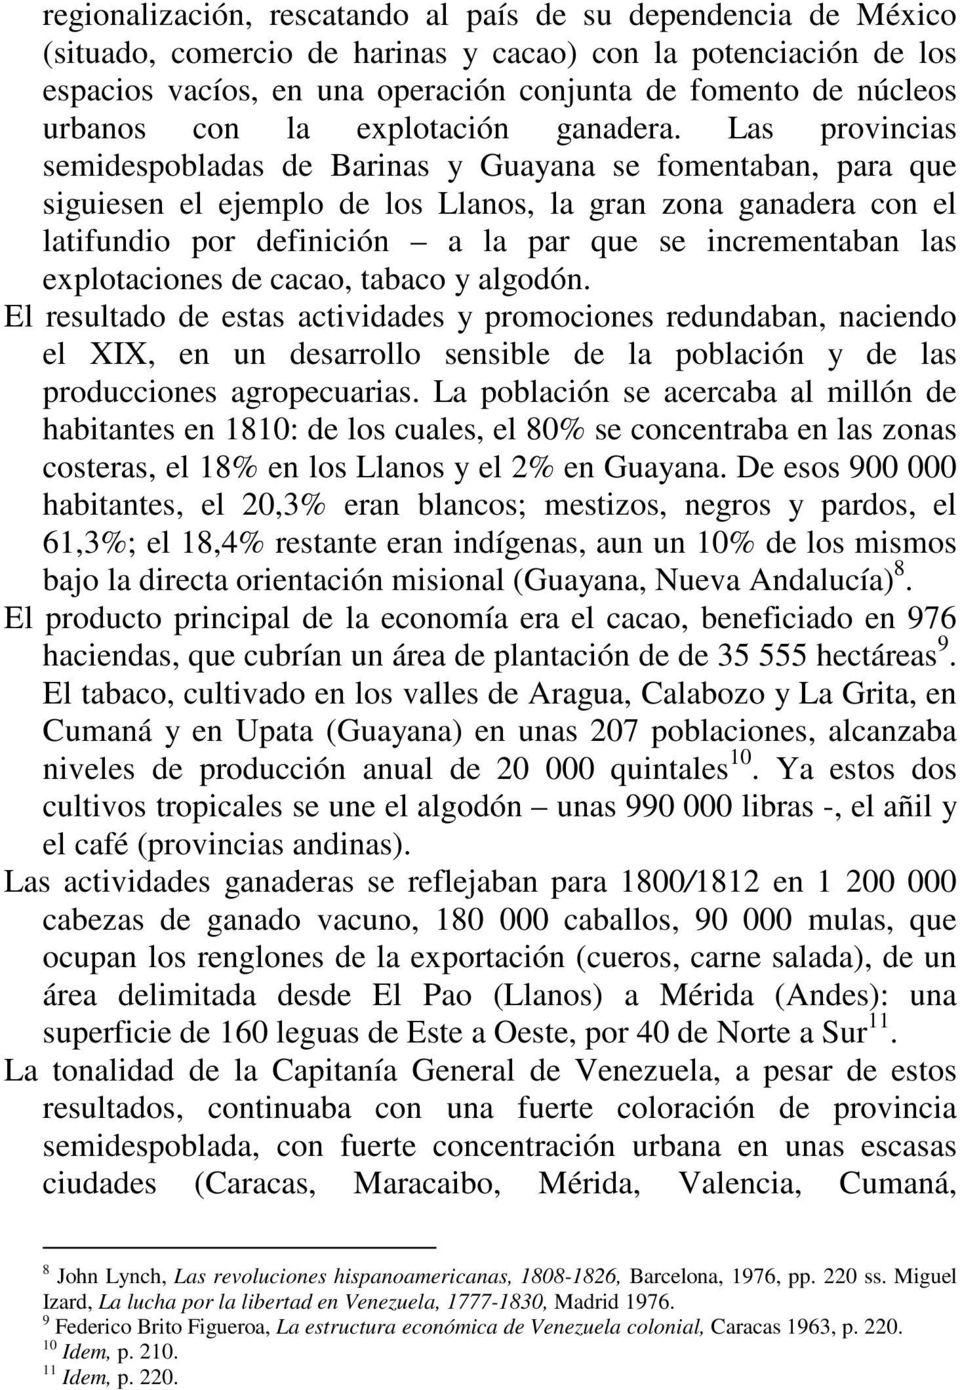 Las provincias semidespobladas de Barinas y Guayana se fomentaban, para que siguiesen el ejemplo de los Llanos, la gran zona ganadera con el latifundio por definición a la par que se incrementaban